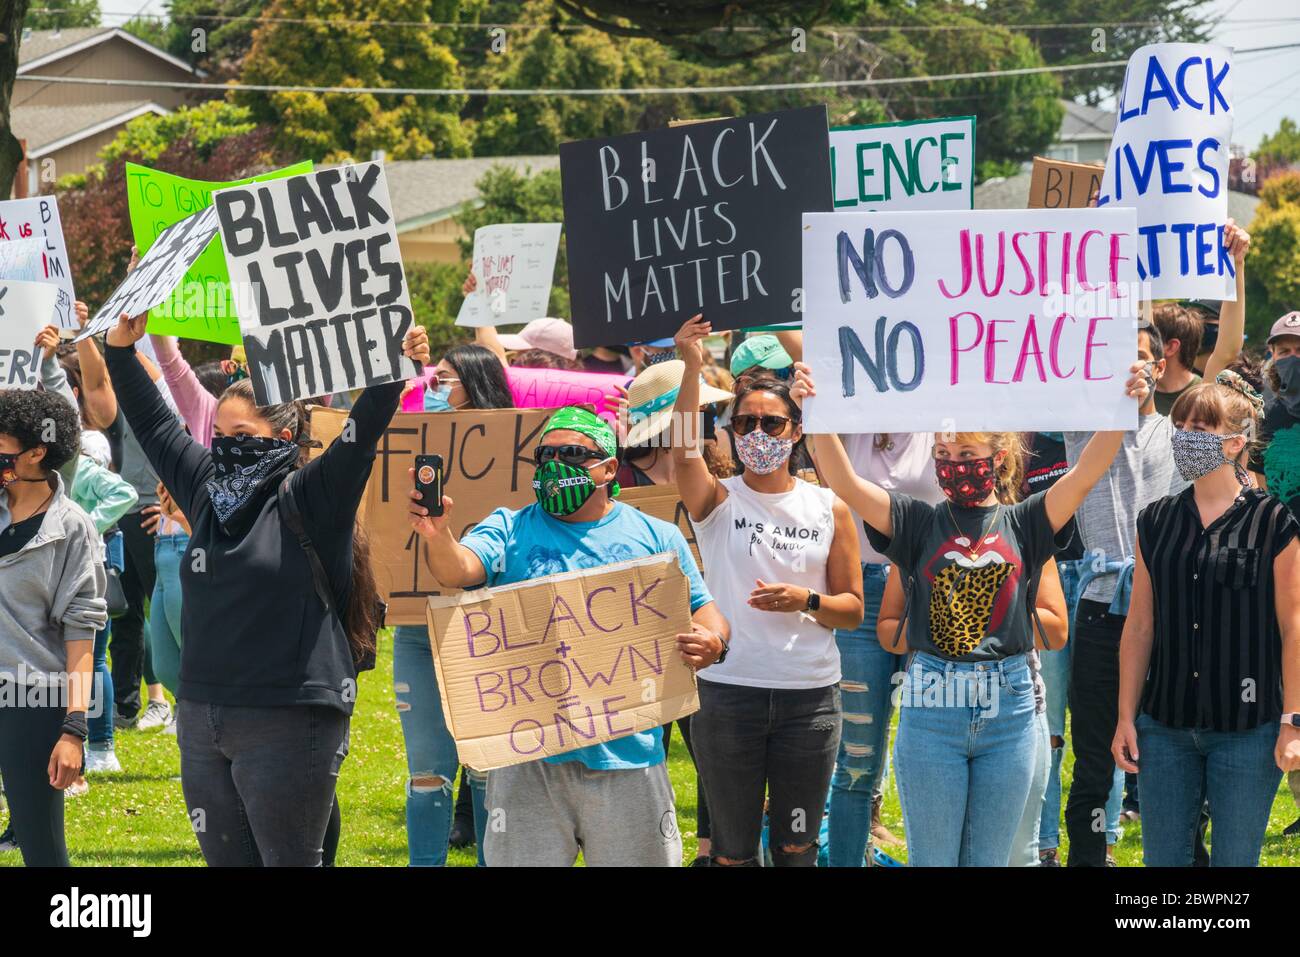 SEASIDE, KALIFORNIEN - 2. JUNI 2020: Demonstranten in Monterey County, Kalifornien, zeigen hausgemachte Schilder vor dem Rathaus von Seaside, während sie an der ersten Teilnahme teilnehmen Stockfoto